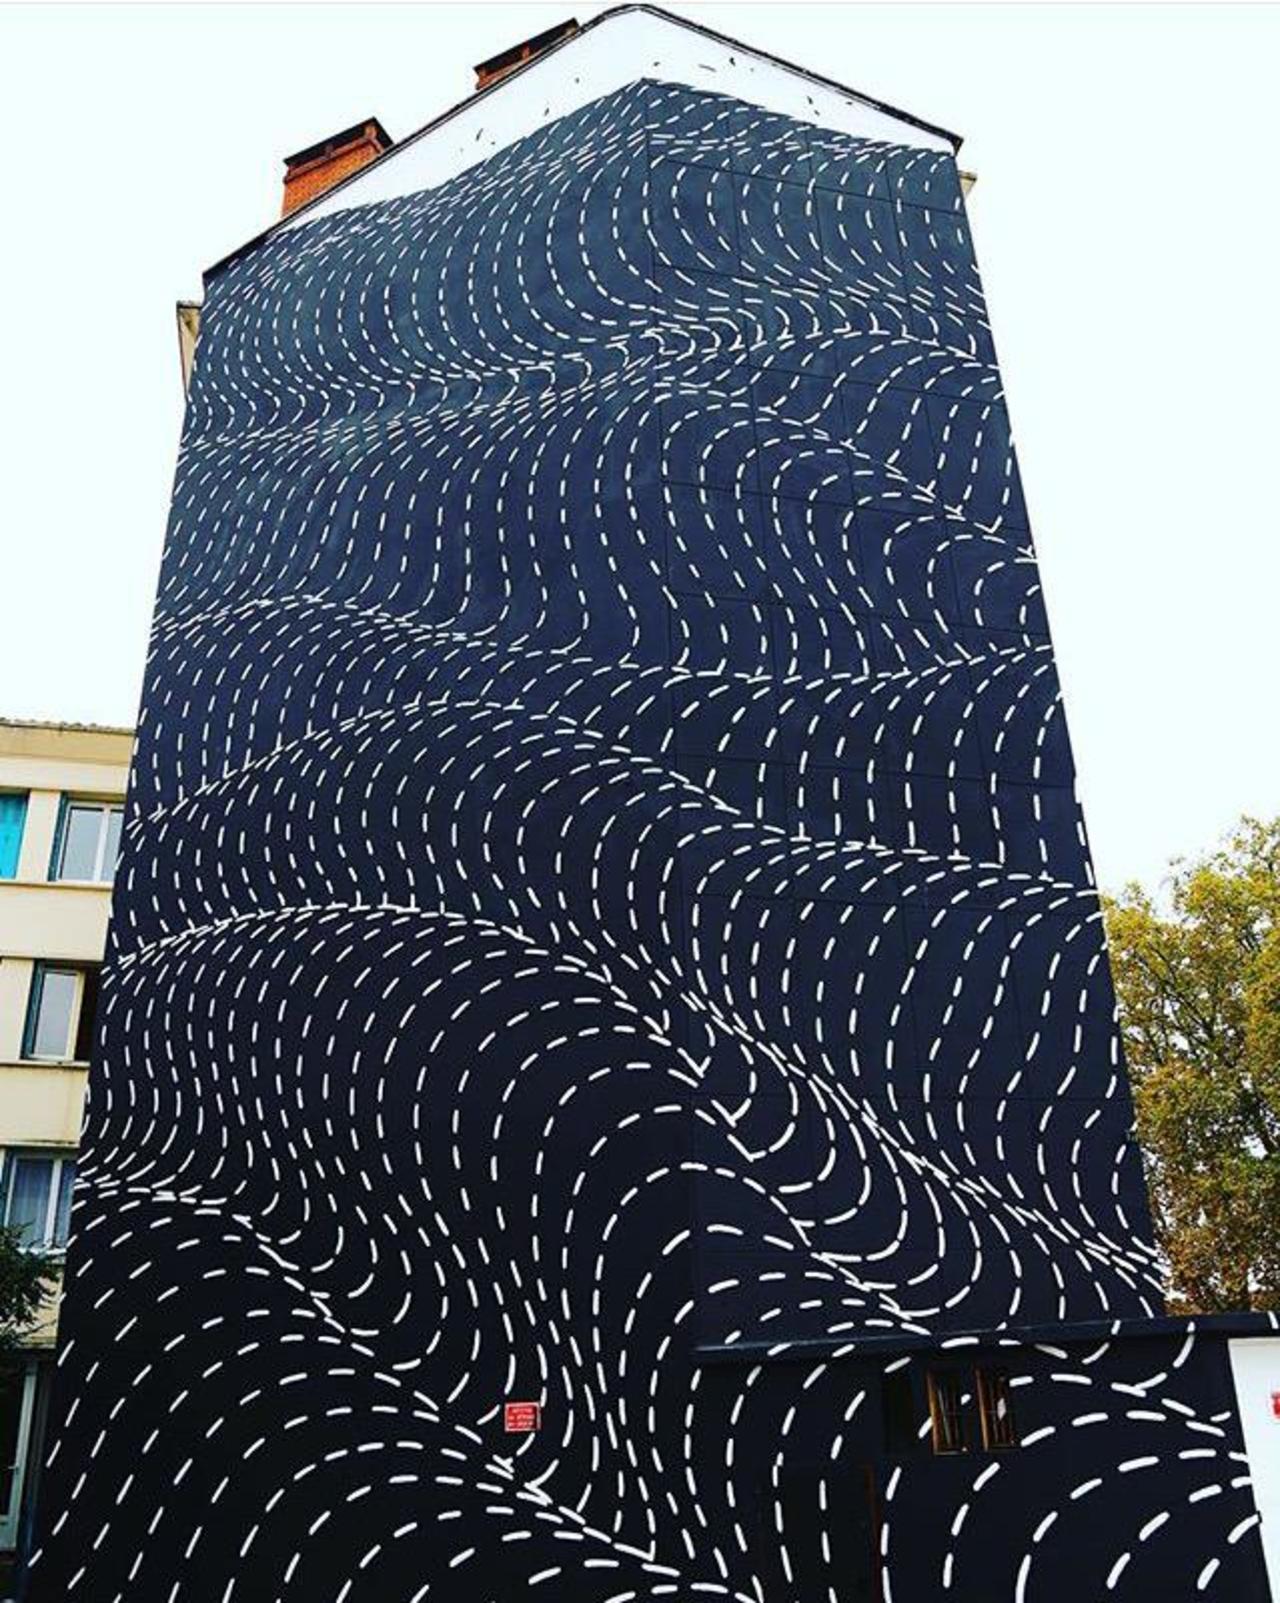 RT @Trxll_Squad: New Street Art by Brendan Monroe's for WOPS ! Festival in Toulouse, France. 

#art #graffiti #mural #streetart https://t.co/ax8vVEujWv